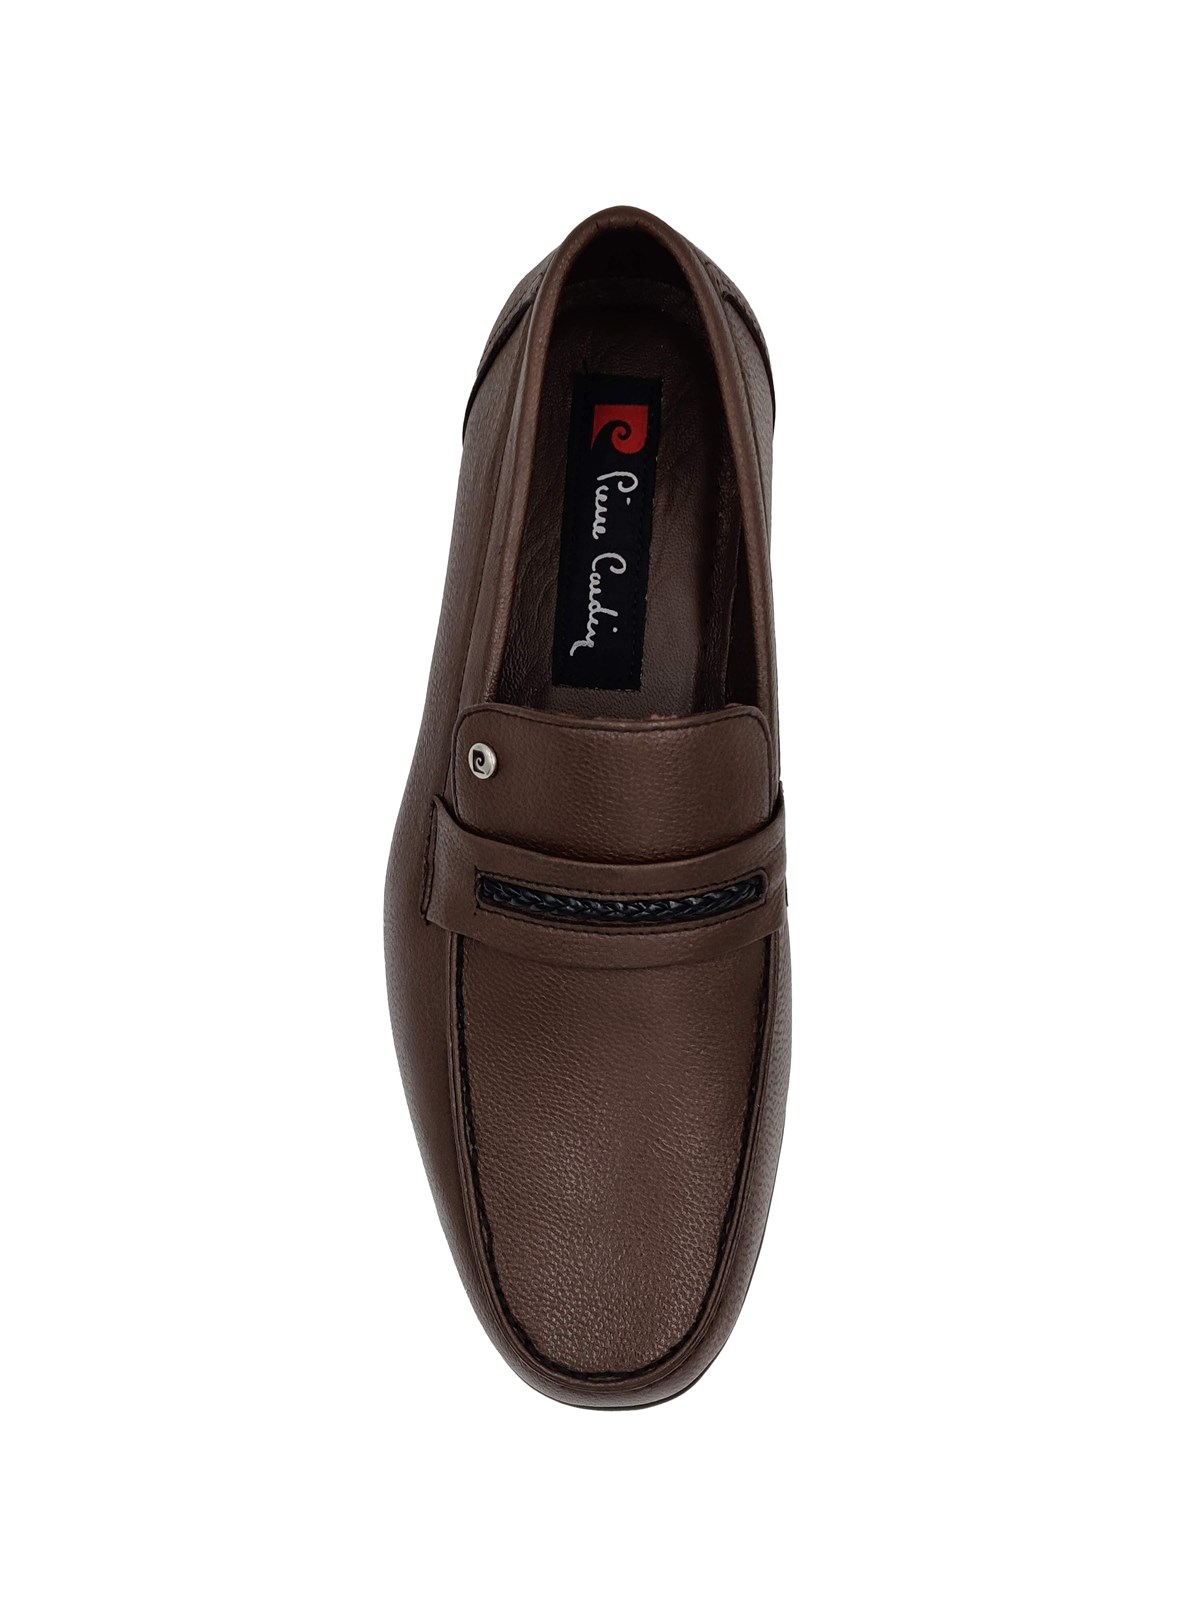 36110 - Pierre Cardin Erkek Ayakkabı Modelleri